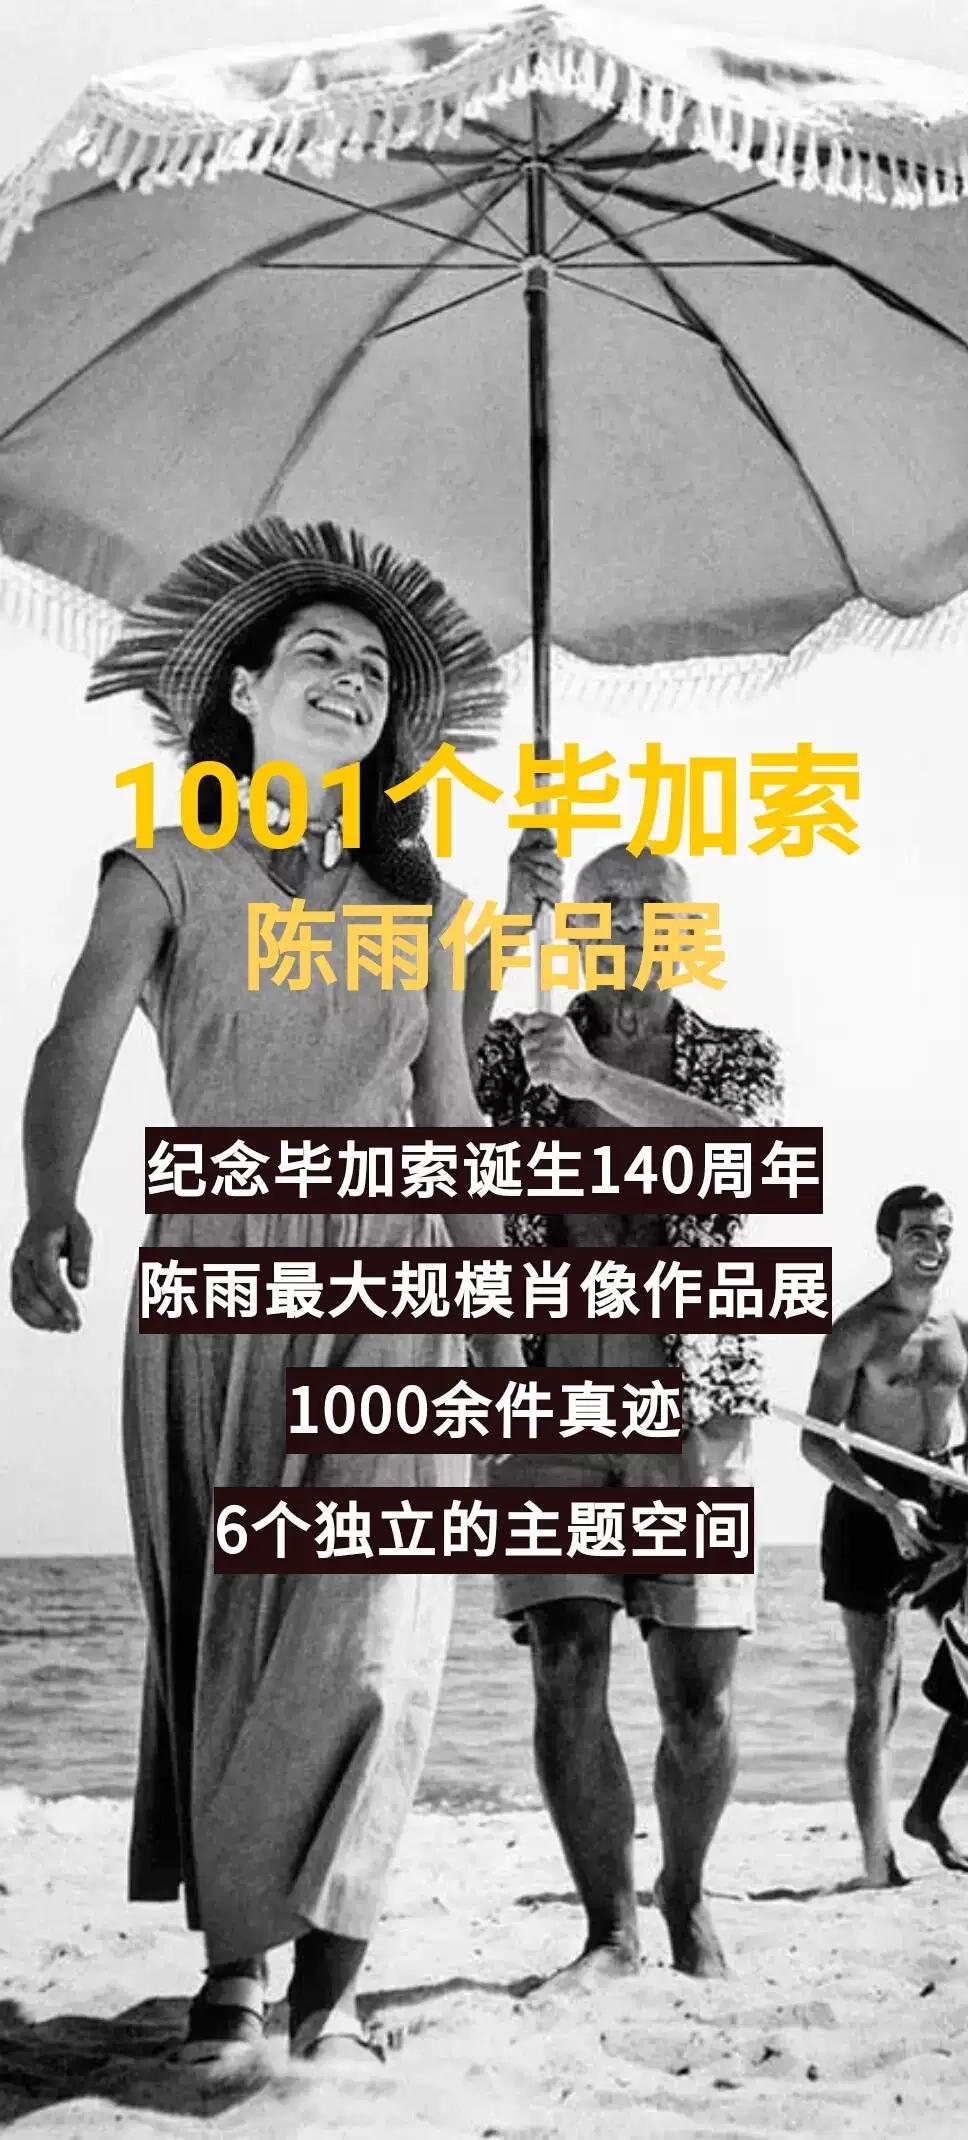 1001个毕加索陈雨作品展杭州站